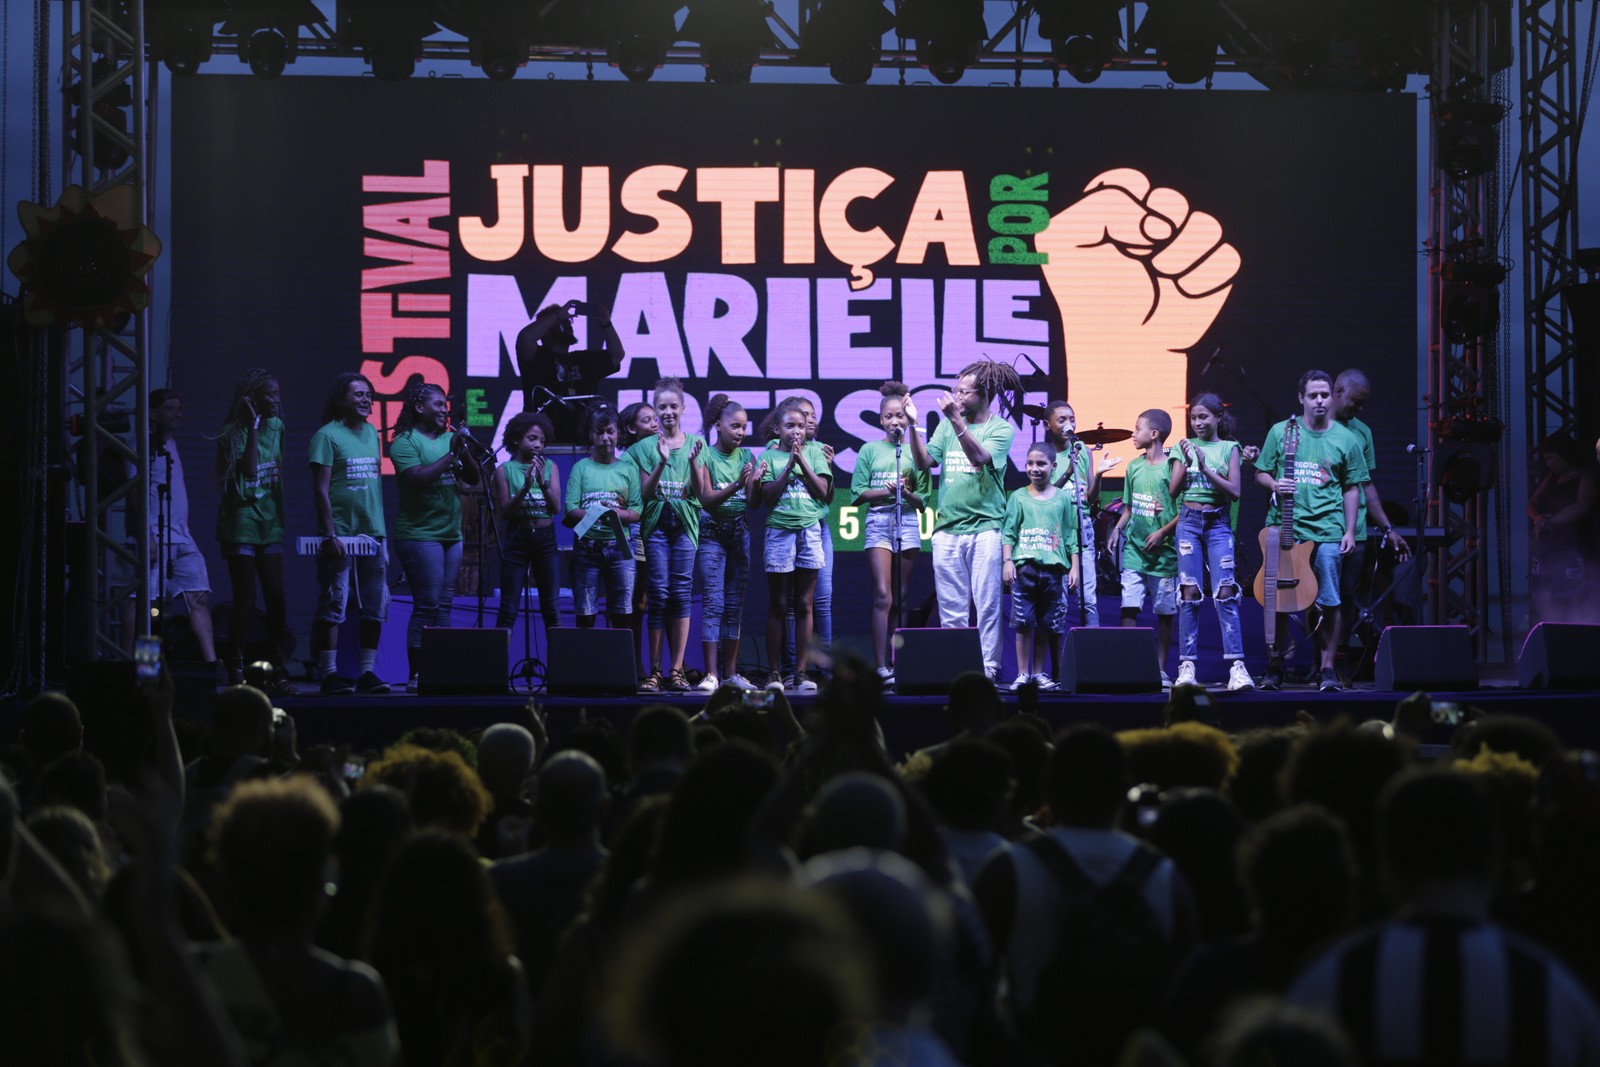 Festival cobra justiça pelo assassinato de Marielle Franco e Anderson Gomes, na Praça Mauá — Foto: Alexandre Cassiano / Agência O Globo